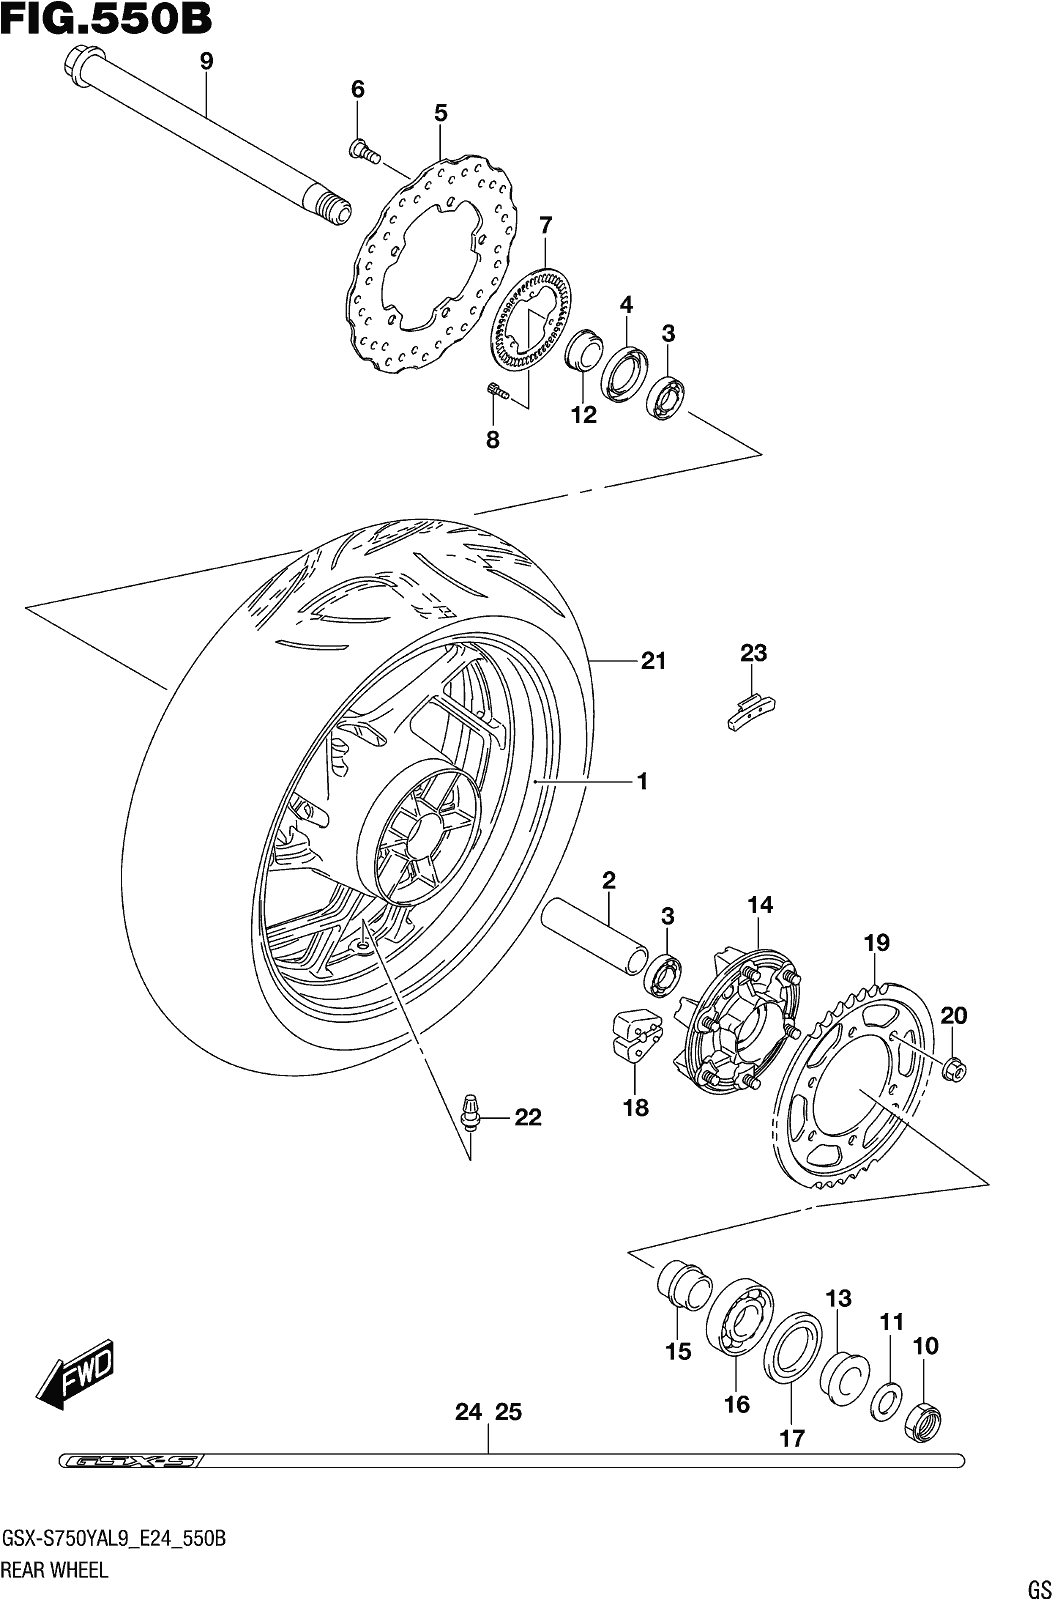 Fig.550b Rear Wheel (gsx-s750zal9 E24)